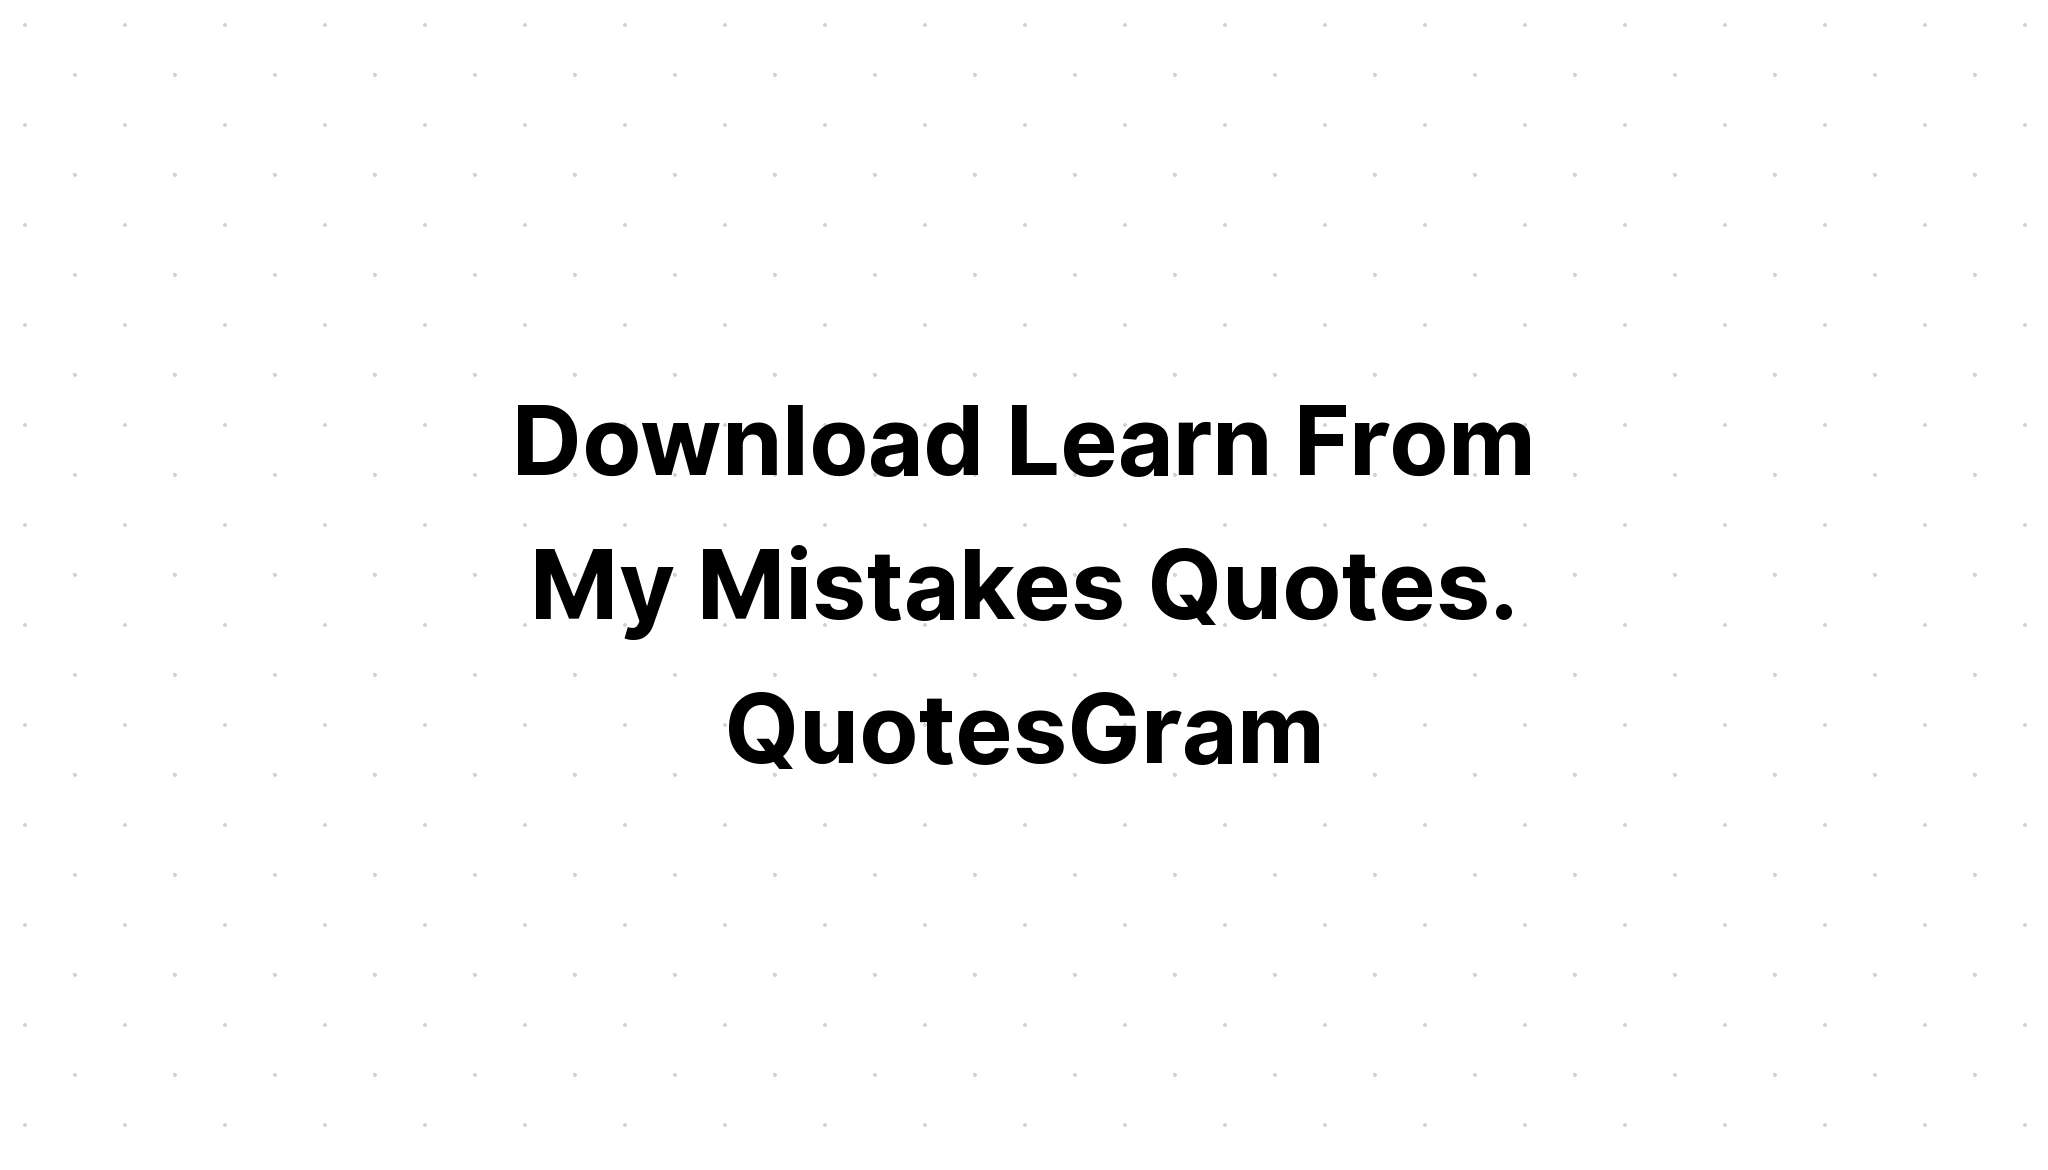 Download 1982 Vintage Quote Design SVG File